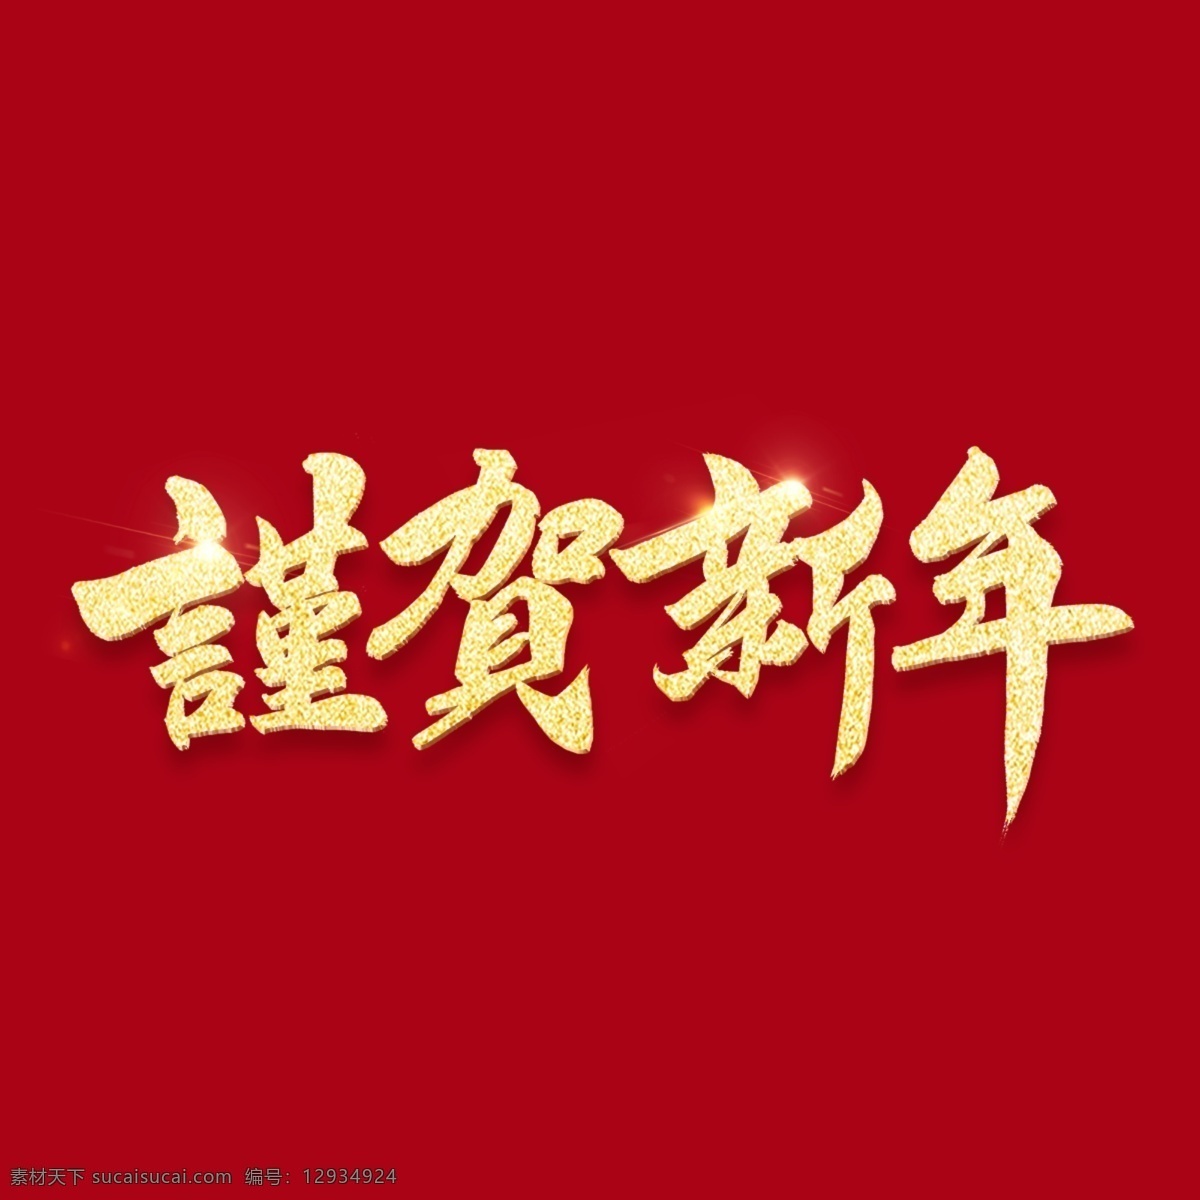 韩国 书法 字符 谨 贺 新年 红色 假日 背景 金 传统 节日庆典 刷